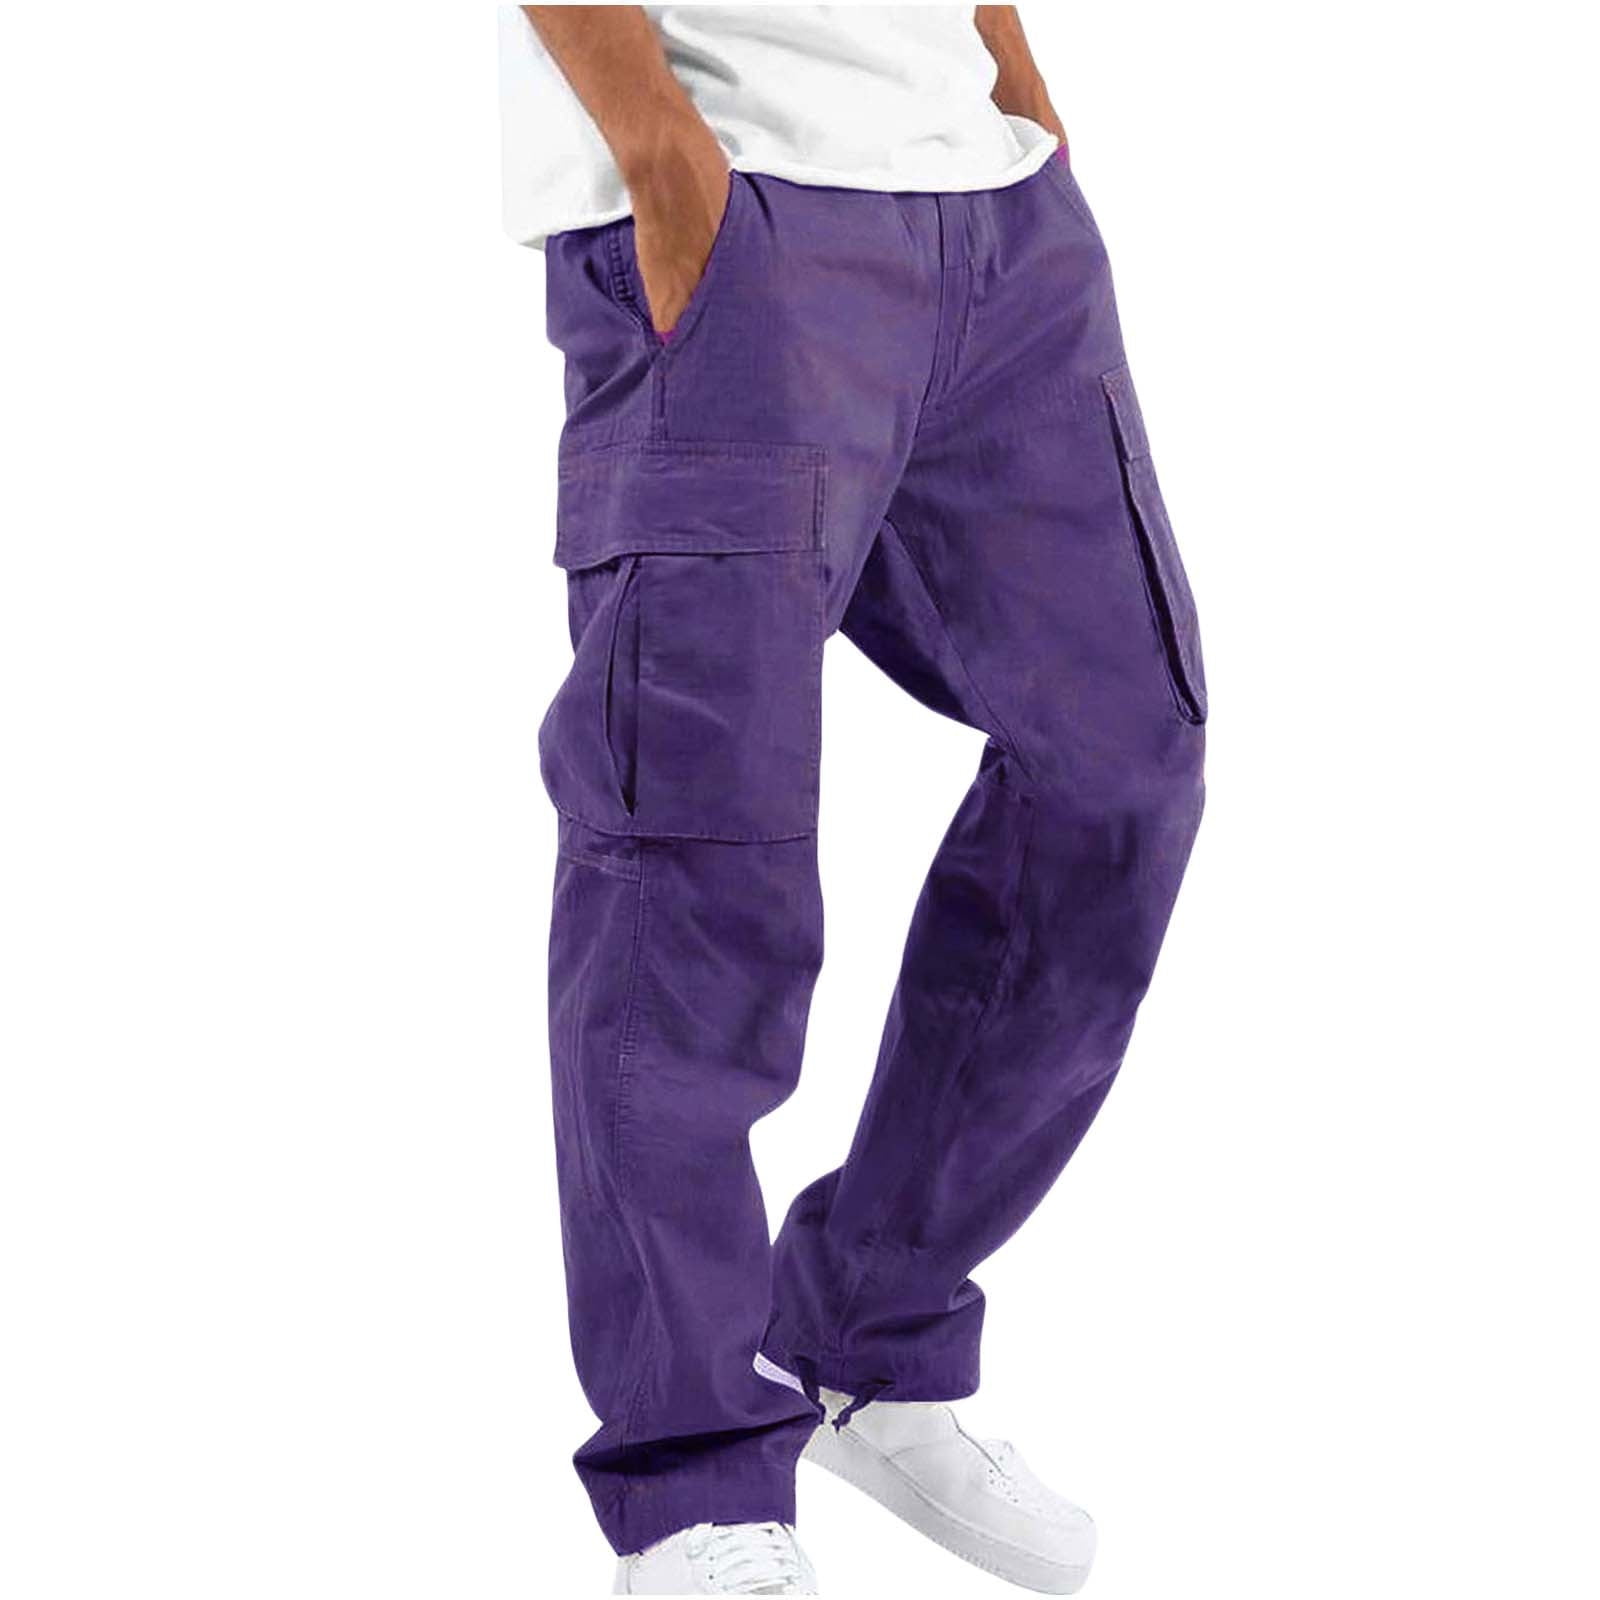 Trousers - Buy Trousers for Men, Women & Kids Online in KSA | REDTAG